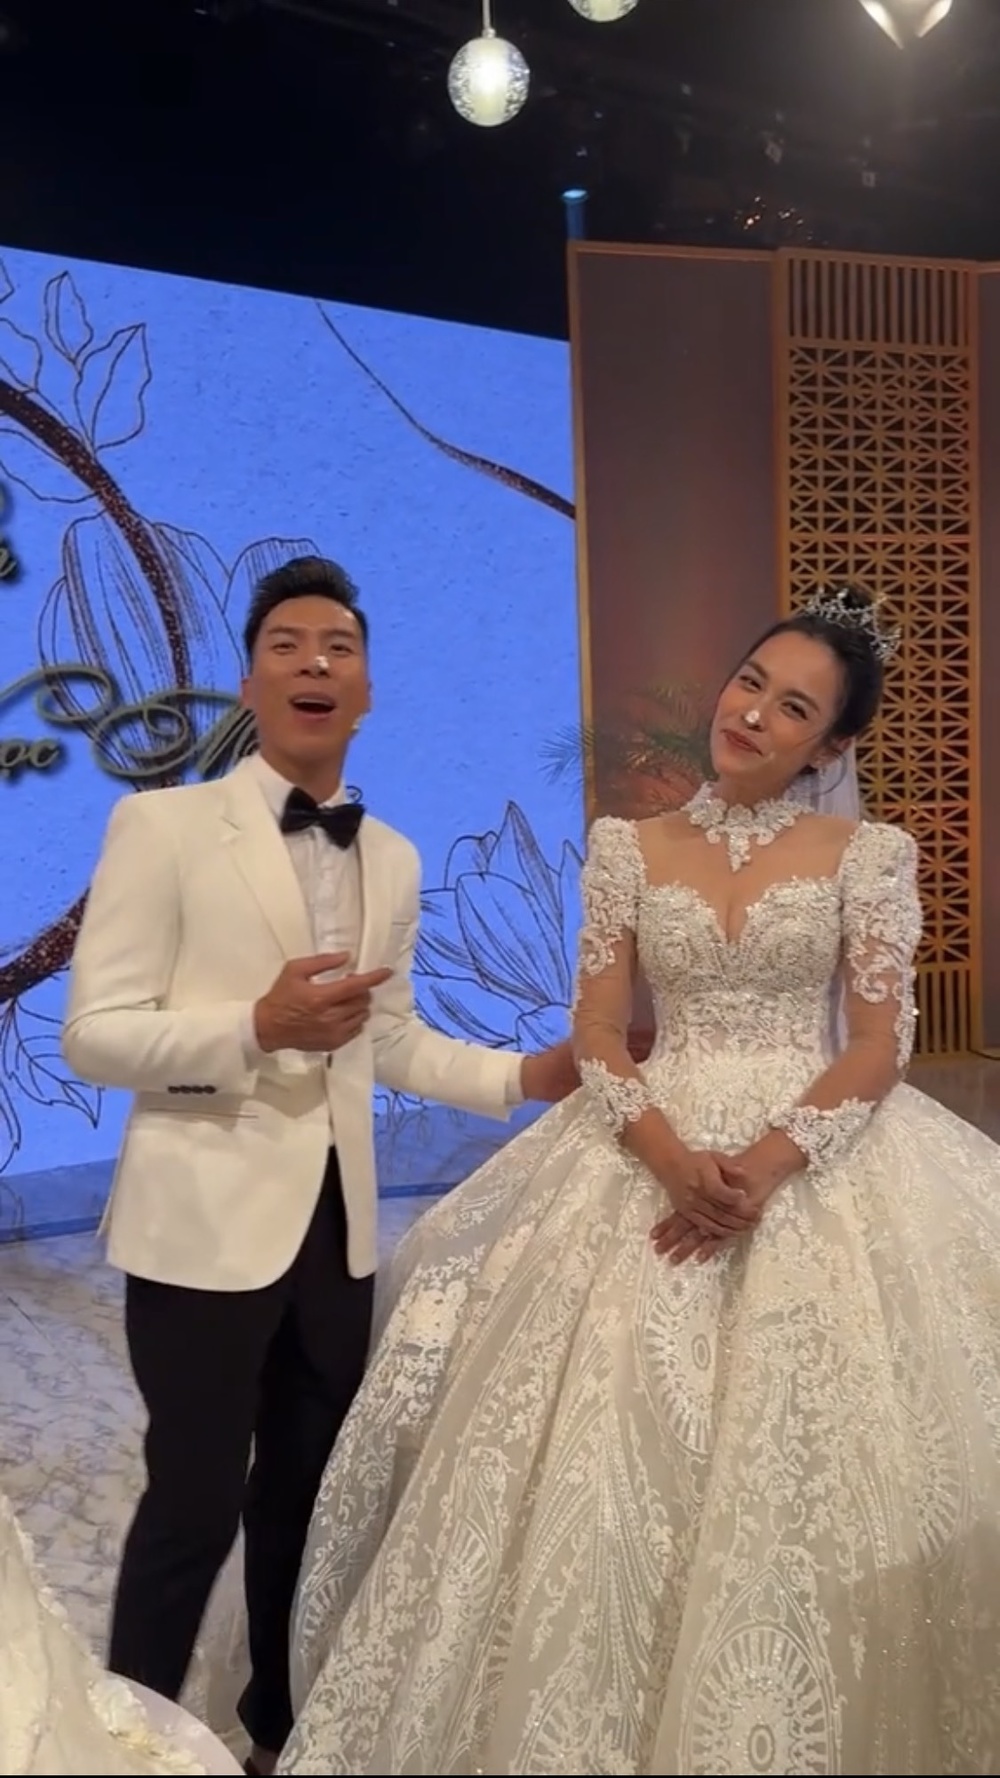 'Hoàng tử xiếc' Quốc Nghiệp bất ngờ cầu hôn vợ 'O Sen' Ngọc Mai trên sóng truyền hình sau gần 10 năm bên nhau - Ảnh 6